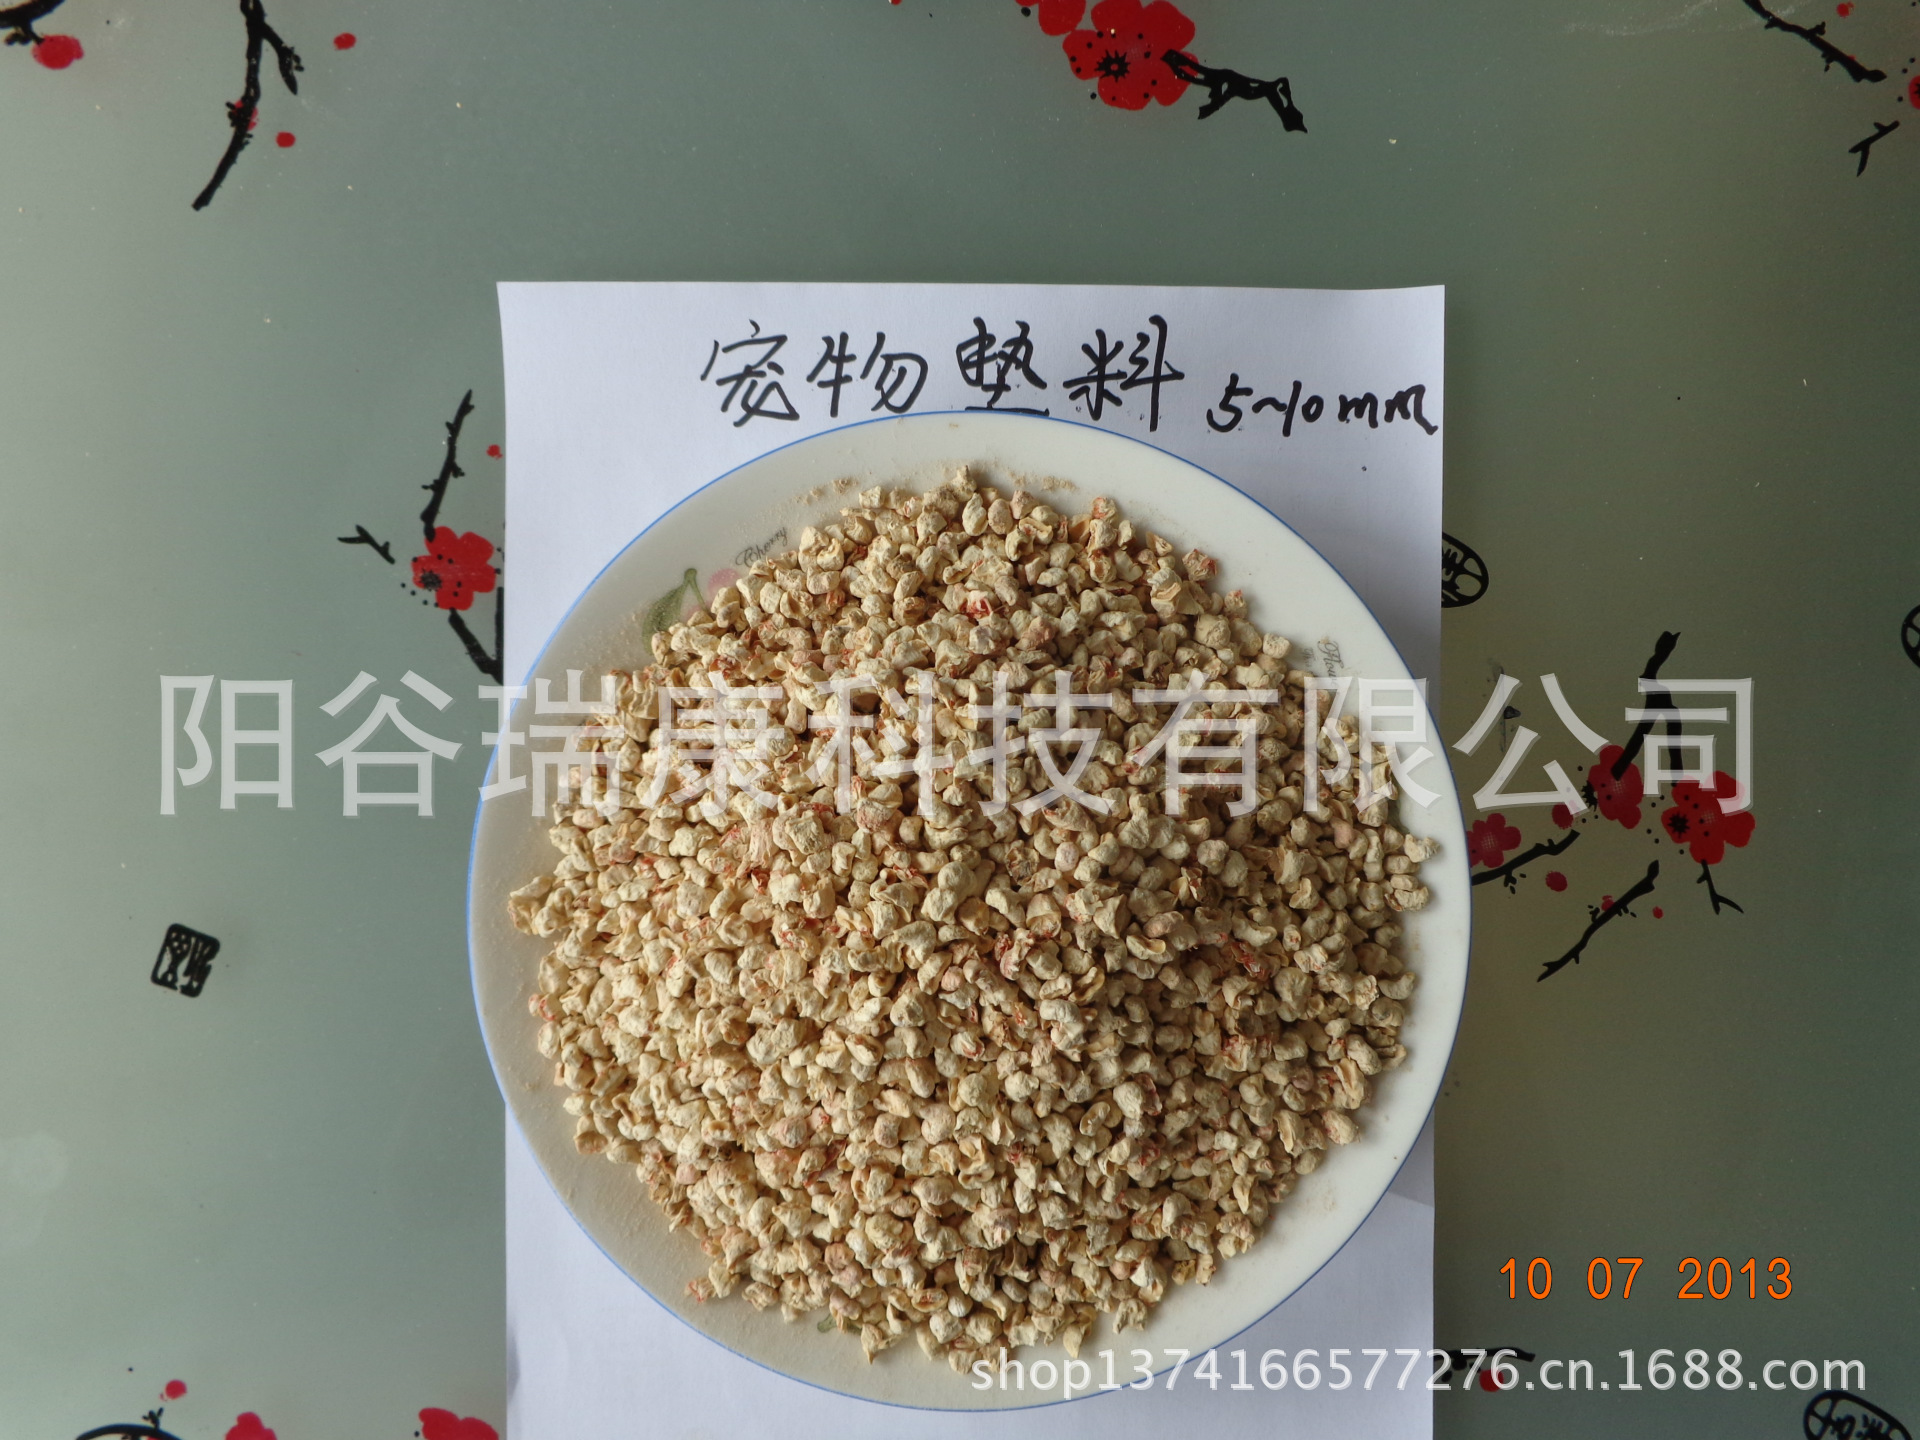 阳谷瑞康科技有限公司常年生产宠物垫料玉米芯颗粒